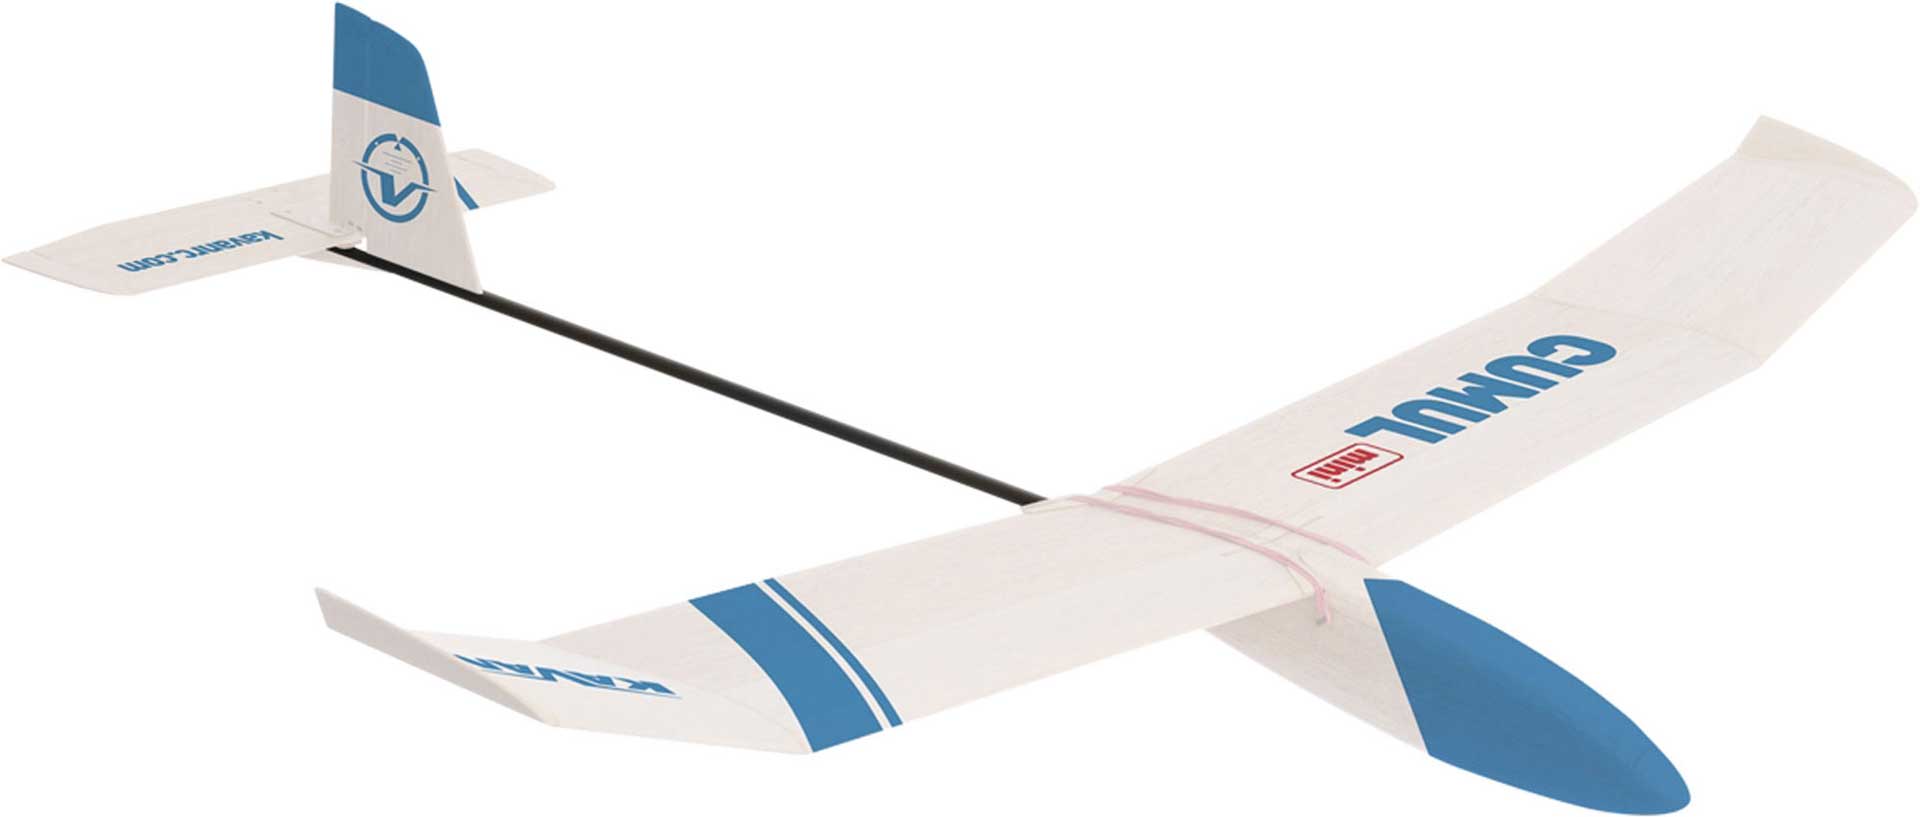 KAVAN CUMUL Mini Glider 1130mm Freeglider